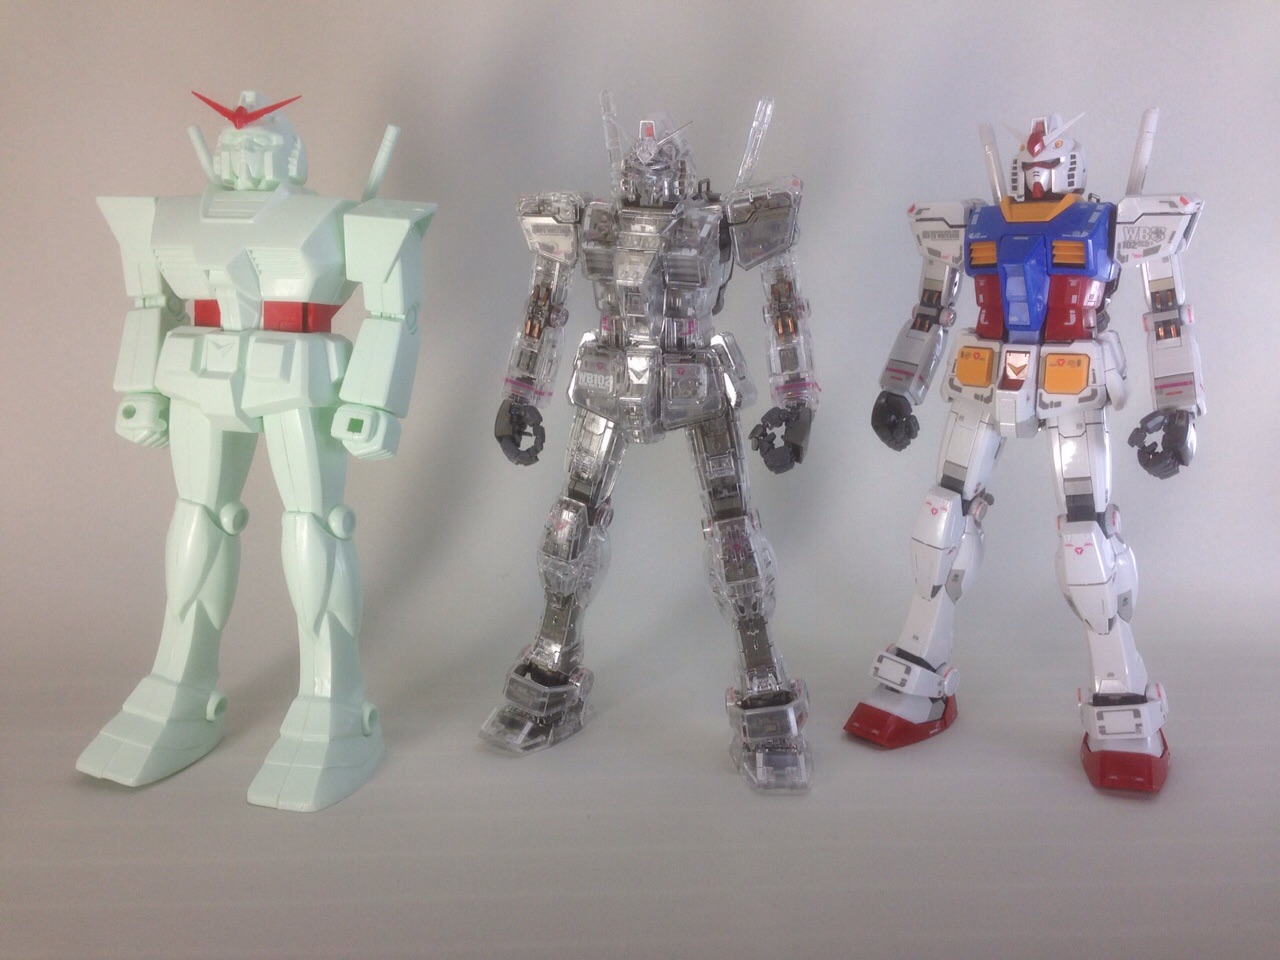 G-リミテッド: Gallery: MG 1/100 RX-78-2 Gundam Ver.3.0 Mechanical